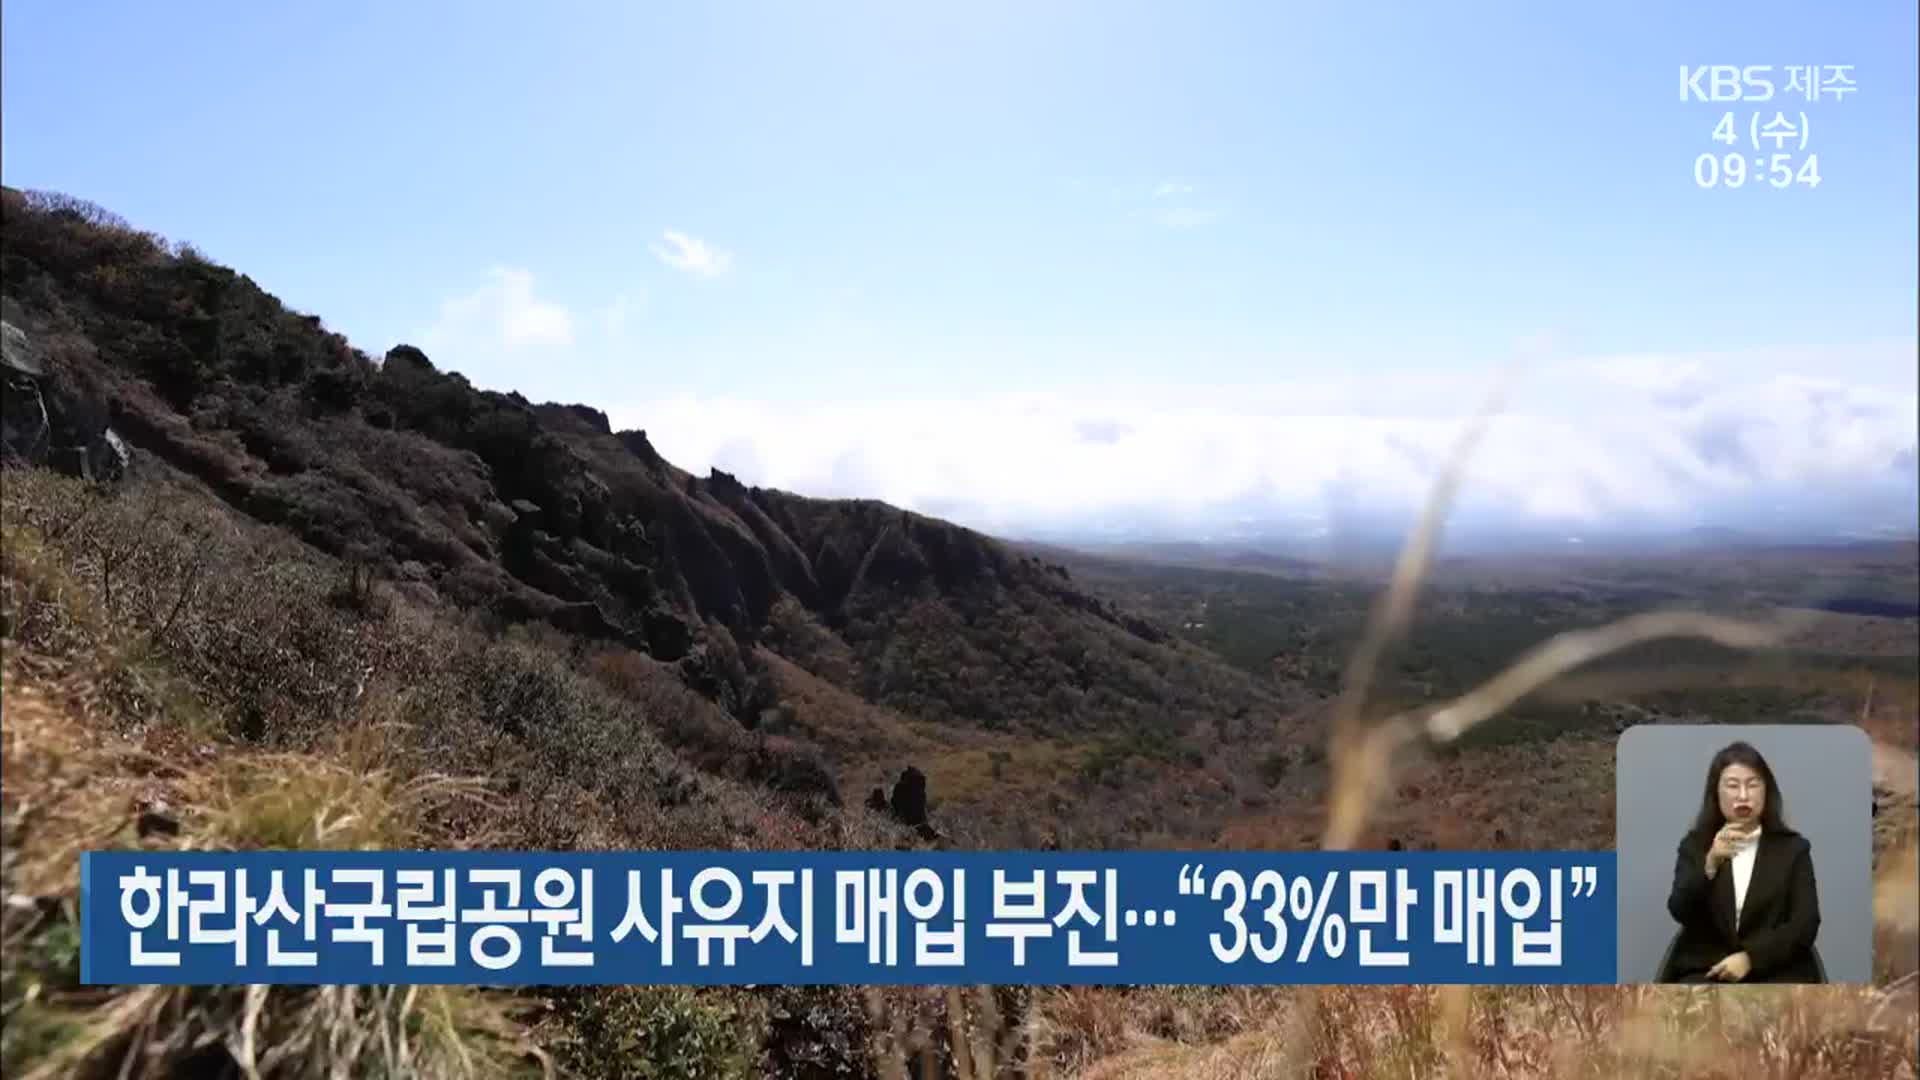 한라산국립공원 사유지 매입 부진…“33%만 매입”